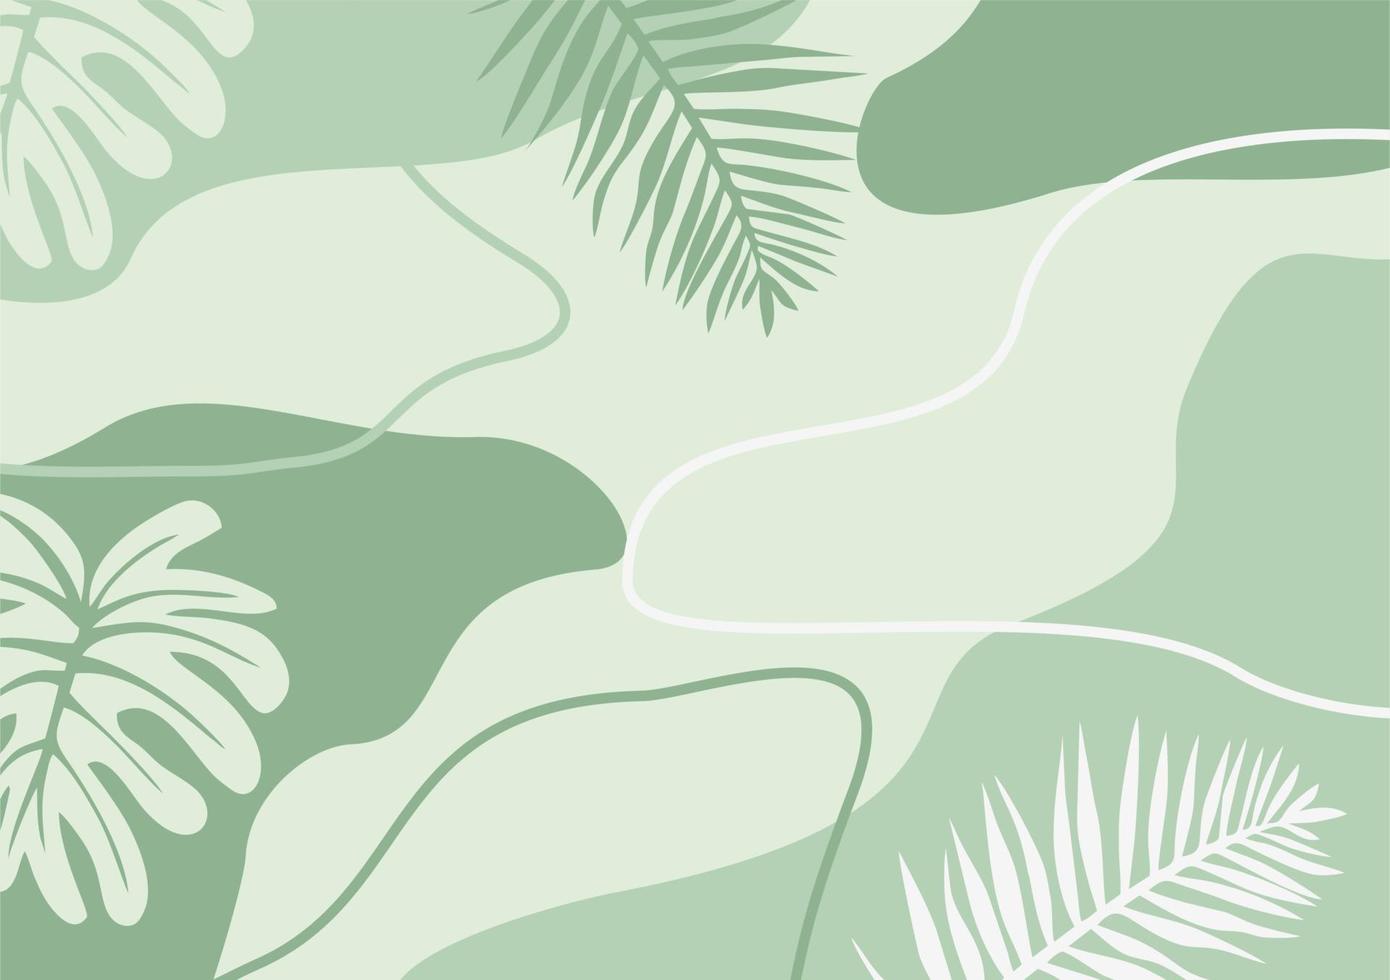 Fondos De Colores Verdes relajante fondo de color verde pastel fresco. con elementos abstractos y  plantas tropicales creativas plantilla de redes sociales moderna y moderna  8555319 Vector en Vecteezy